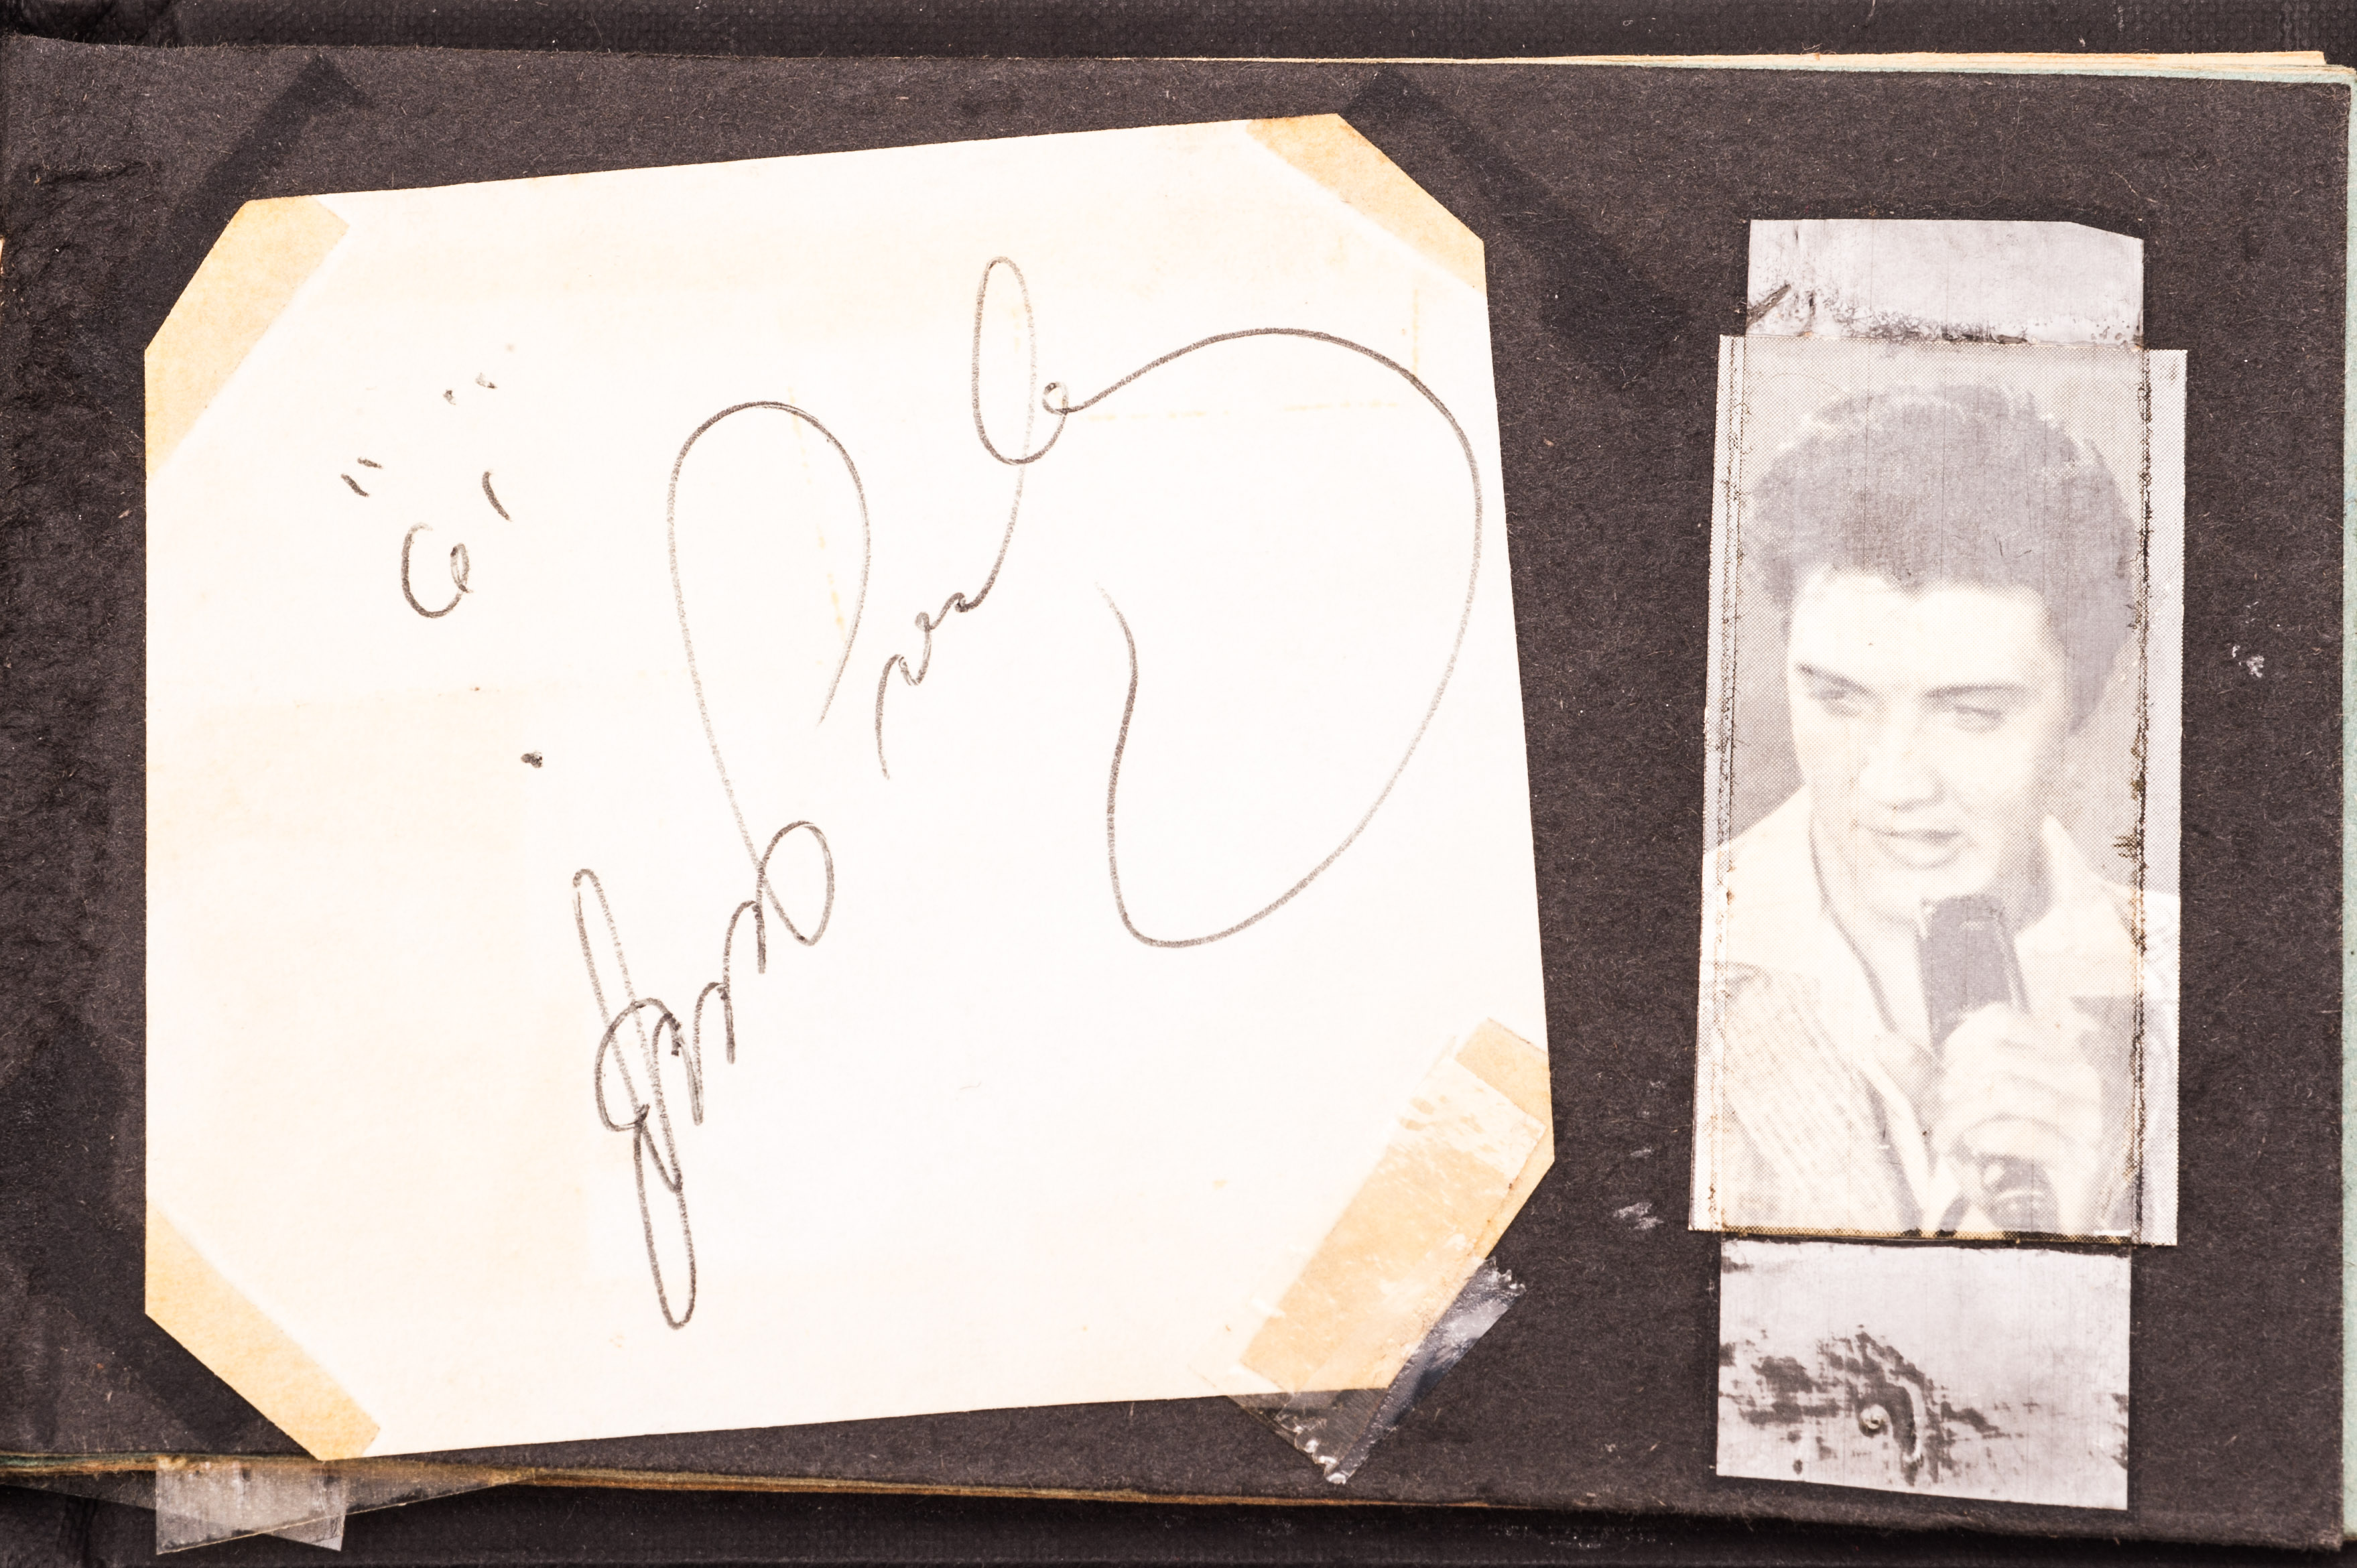 Autograph Album: vintage album, circa 1950s, with signatures including Elvis Presley, Gene Vincent,